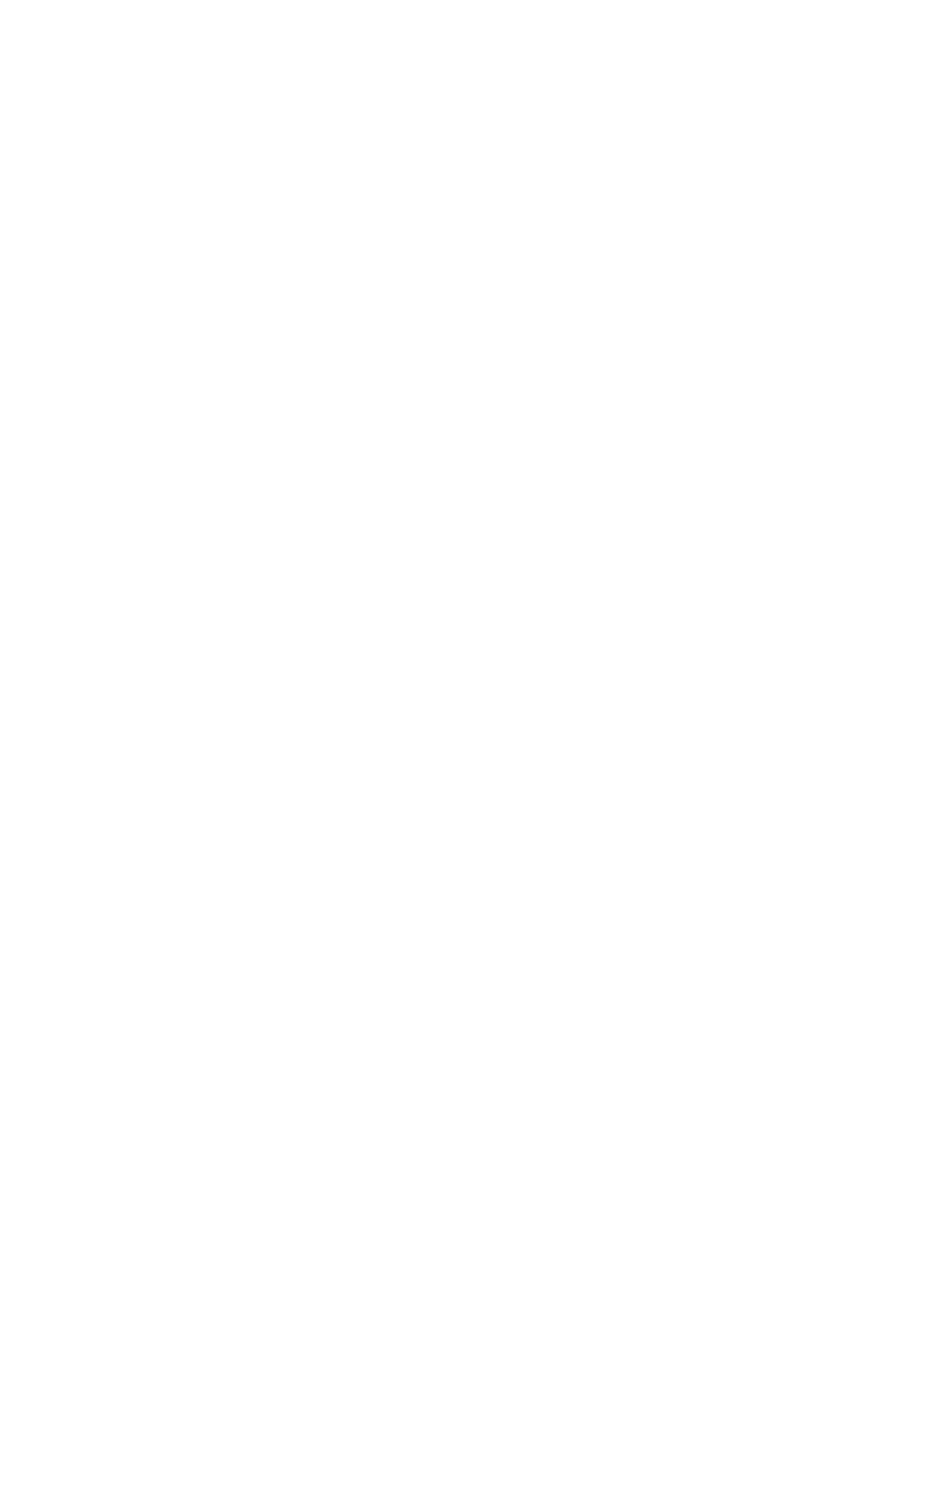 Aristocrat logo for dark backgrounds (transparent PNG)